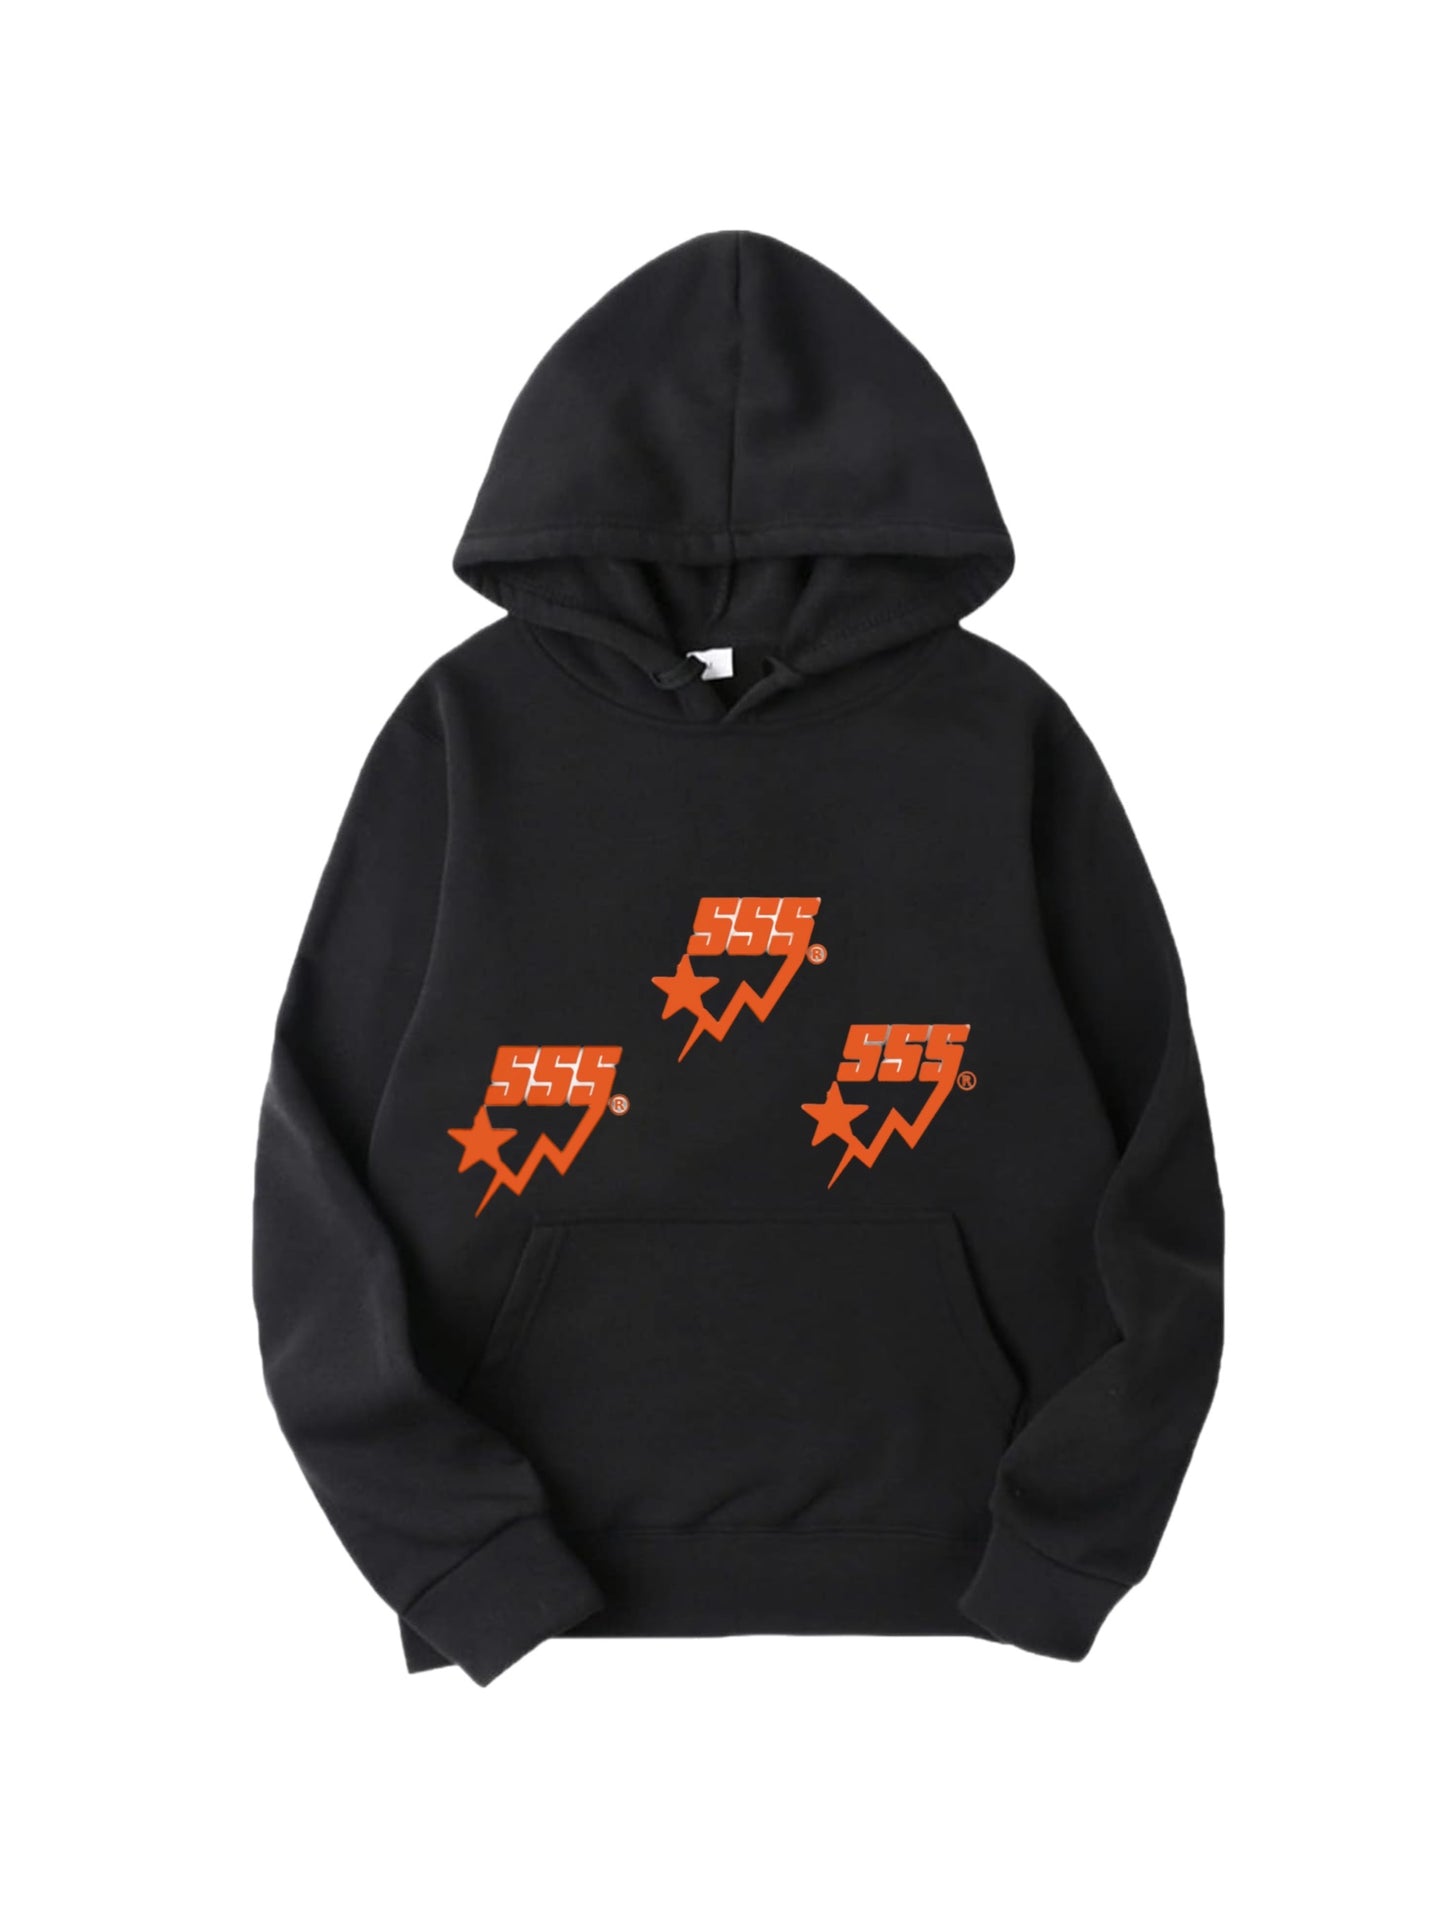 Orange 555 Star hoodies